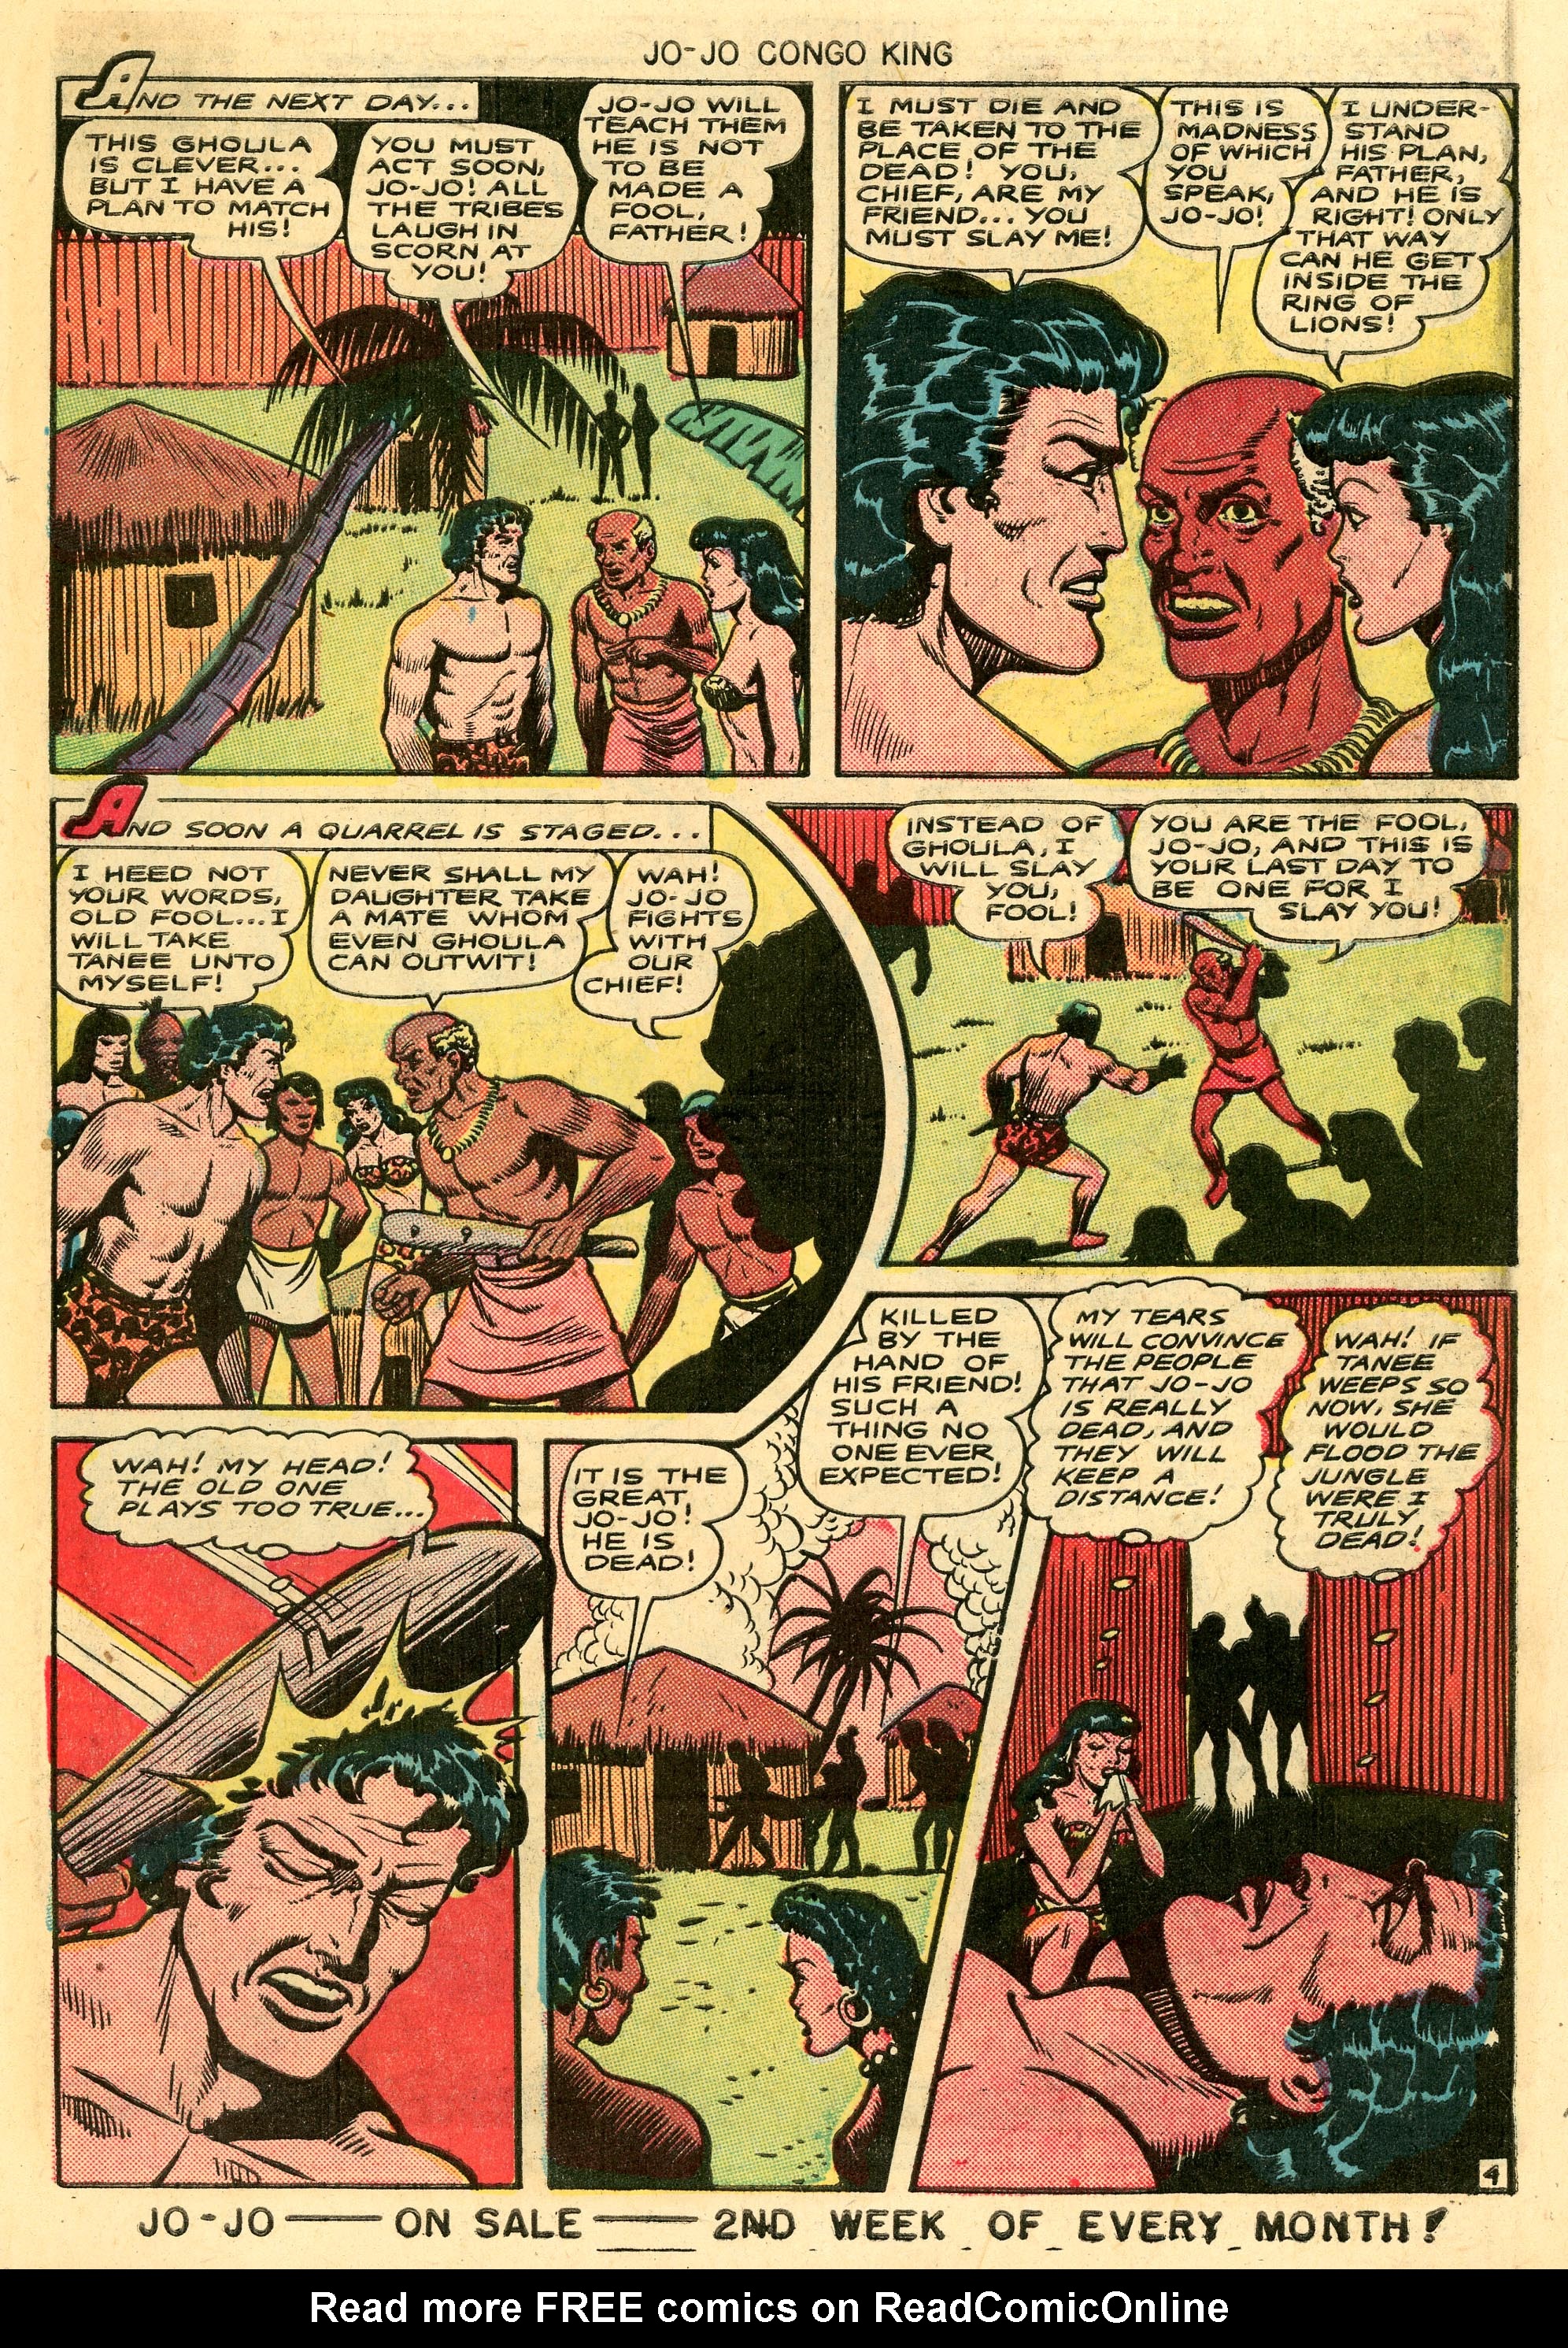 Read online Jo-Jo Congo King comic -  Issue #10 - 27